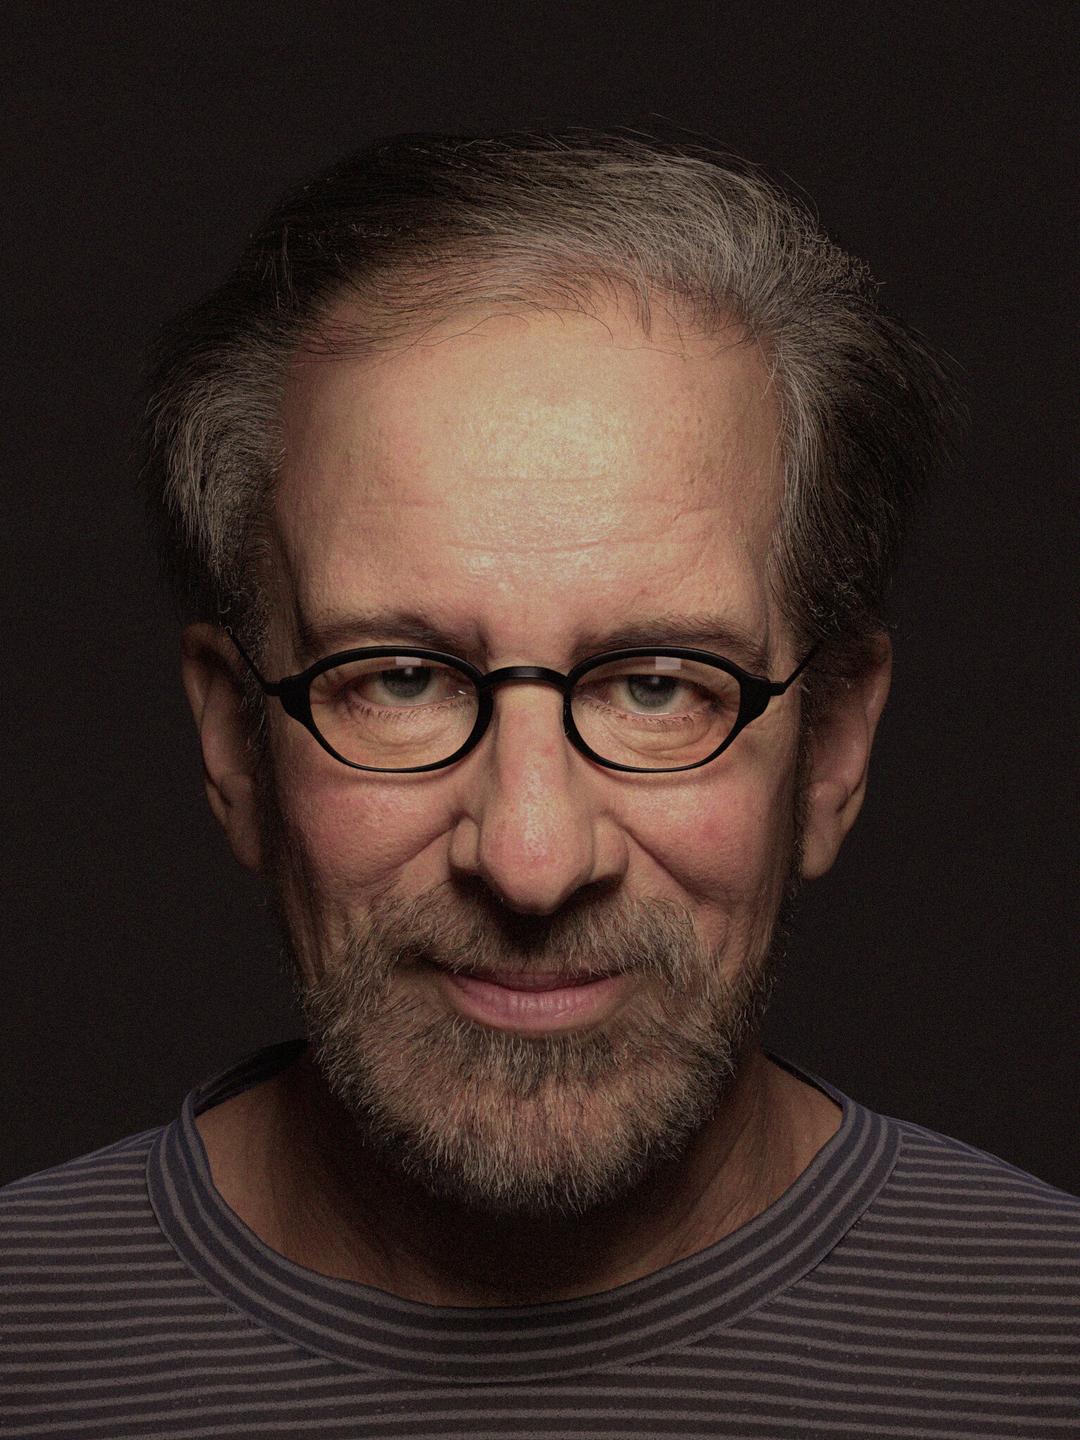 Steven Spielberg how old is he